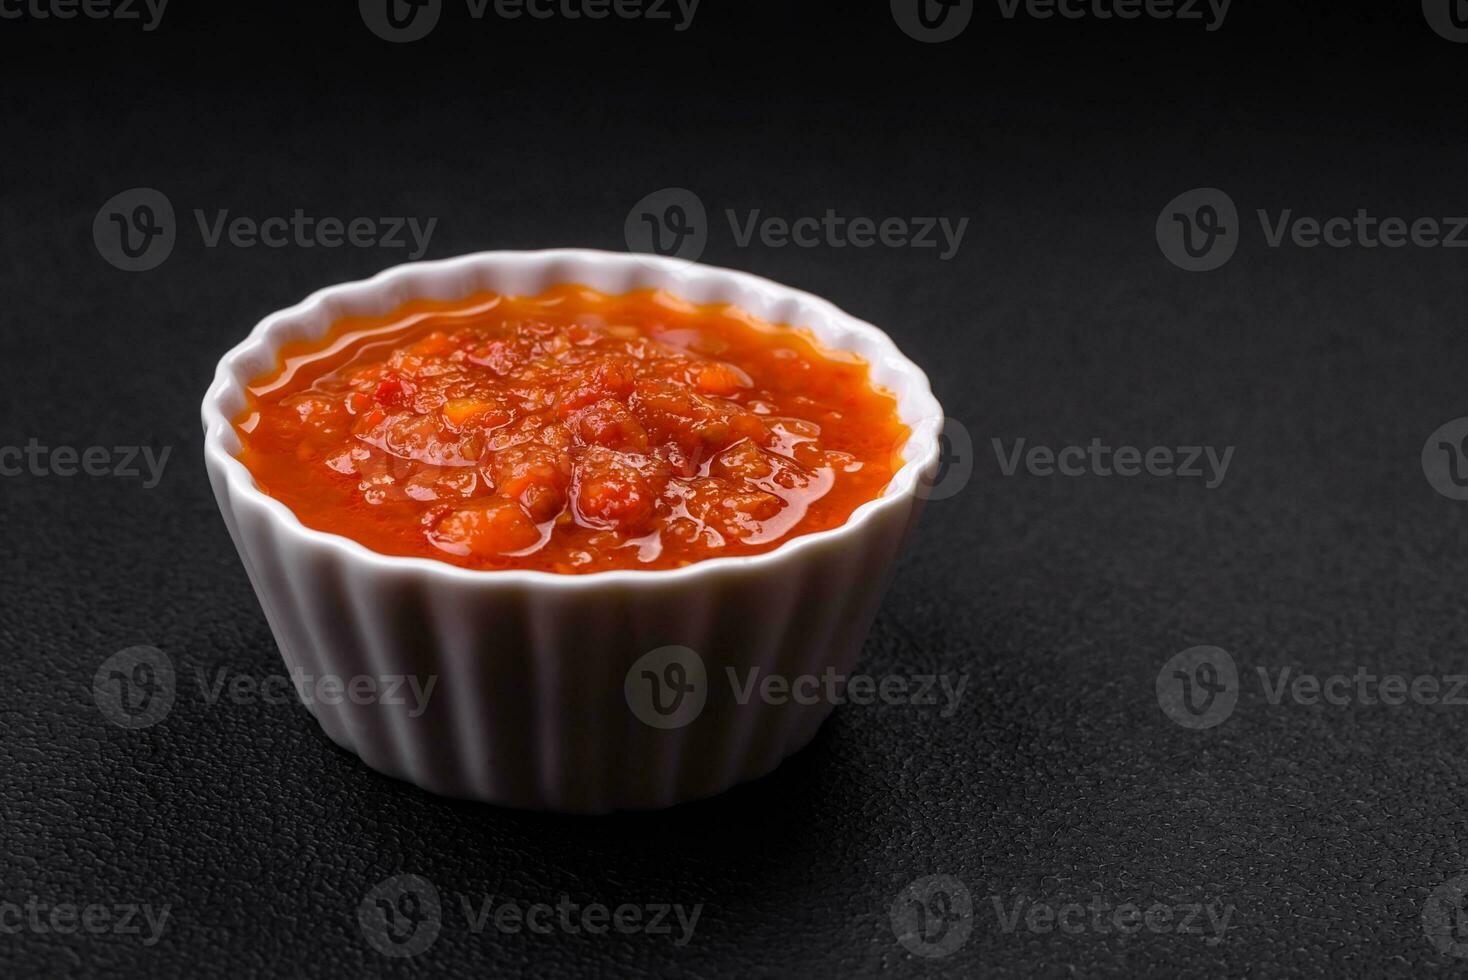 heerlijk pittig tomaat saus met peper, knoflook, zout, specerijen en kruiden foto